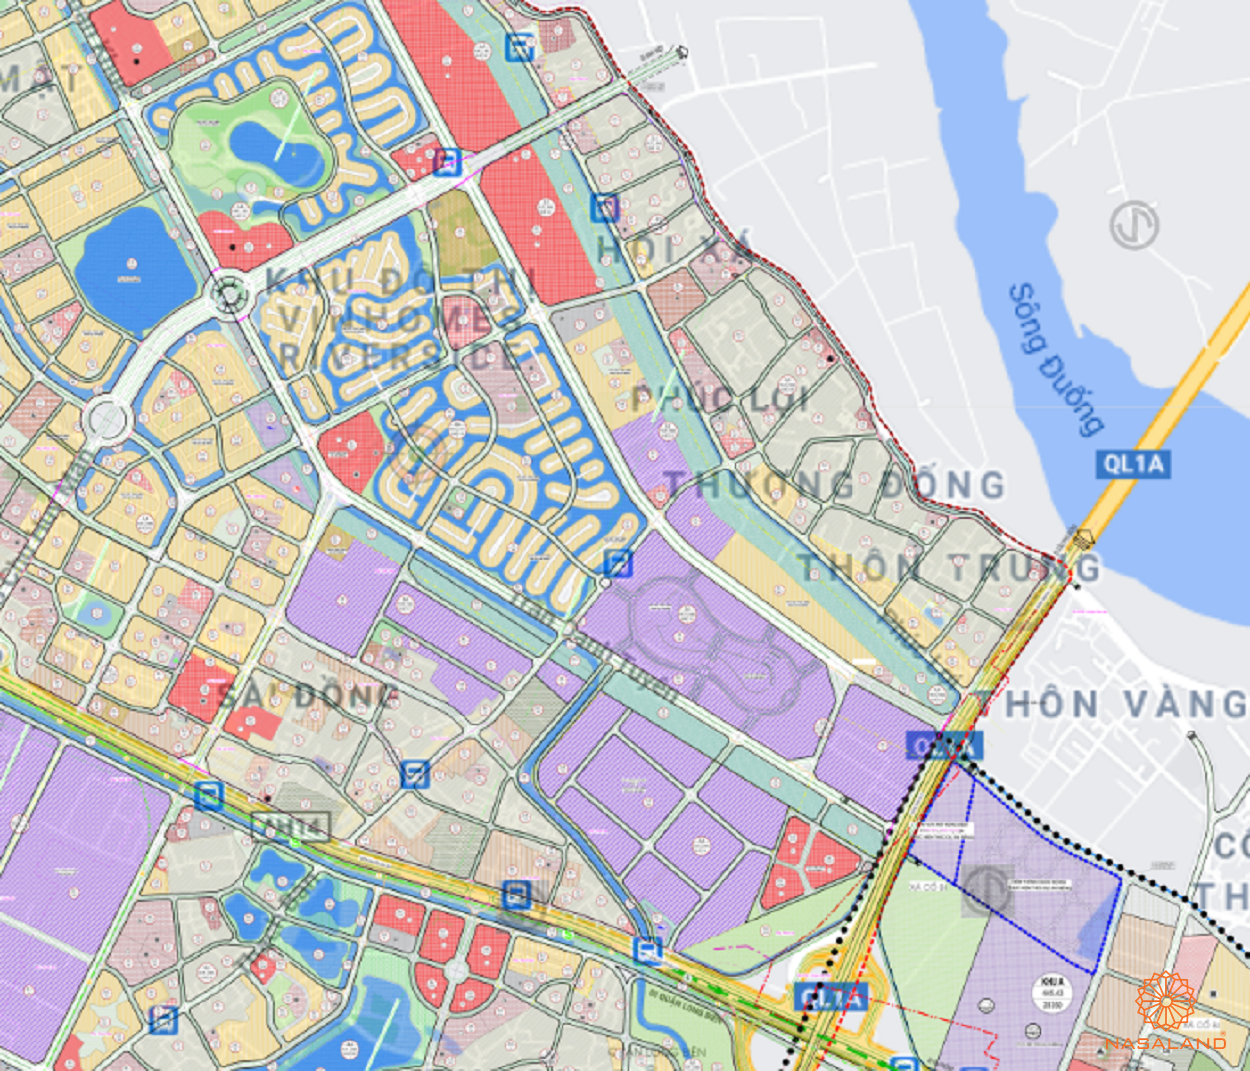 Bản đồ quy hoạch sử dụng đất Phường Phúc Lợi theo bản đồ quy hoạch sử dụng đất năm 2020 Quận Long Biên, Thành phố Hà Nội.